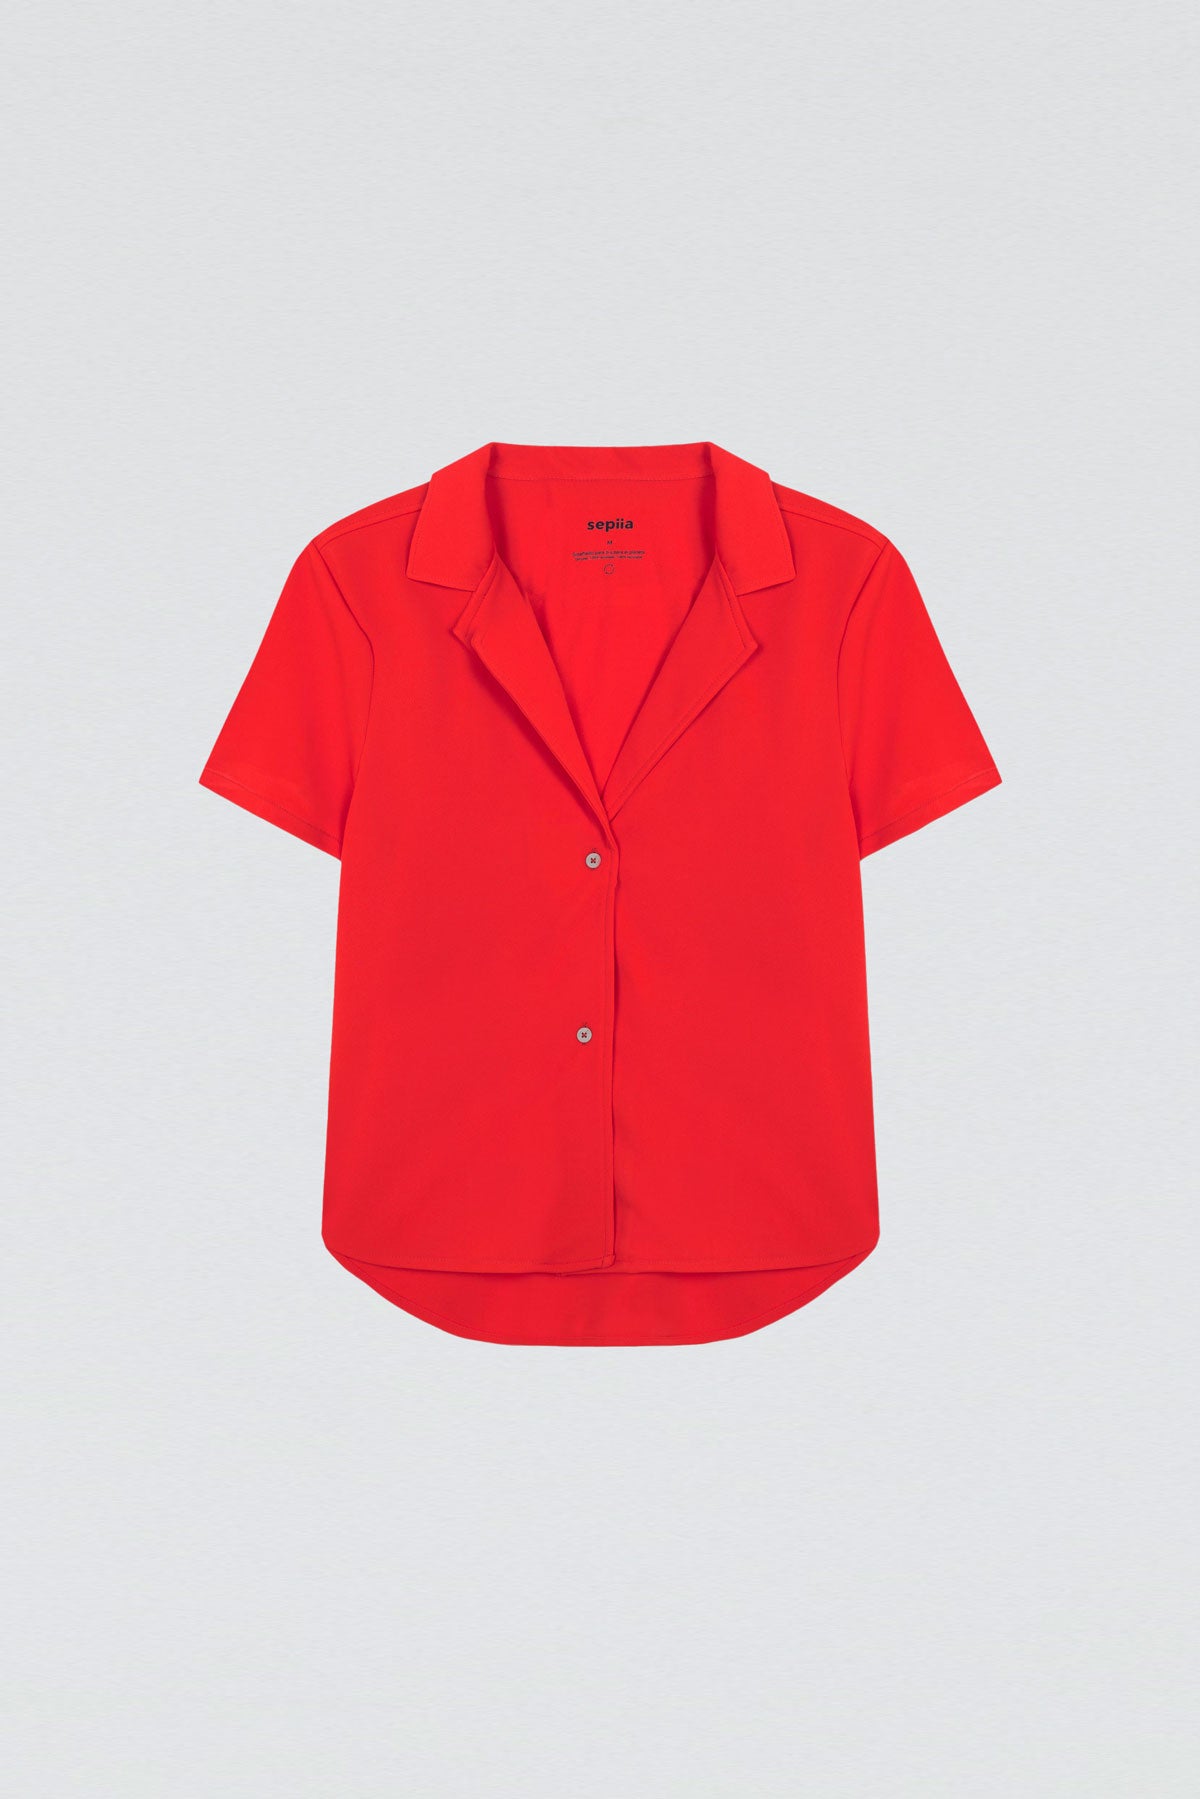 Camisa manga corta rojo cardio de Sepiia, fresca y elegante, perfecta para el verano. Foto plano